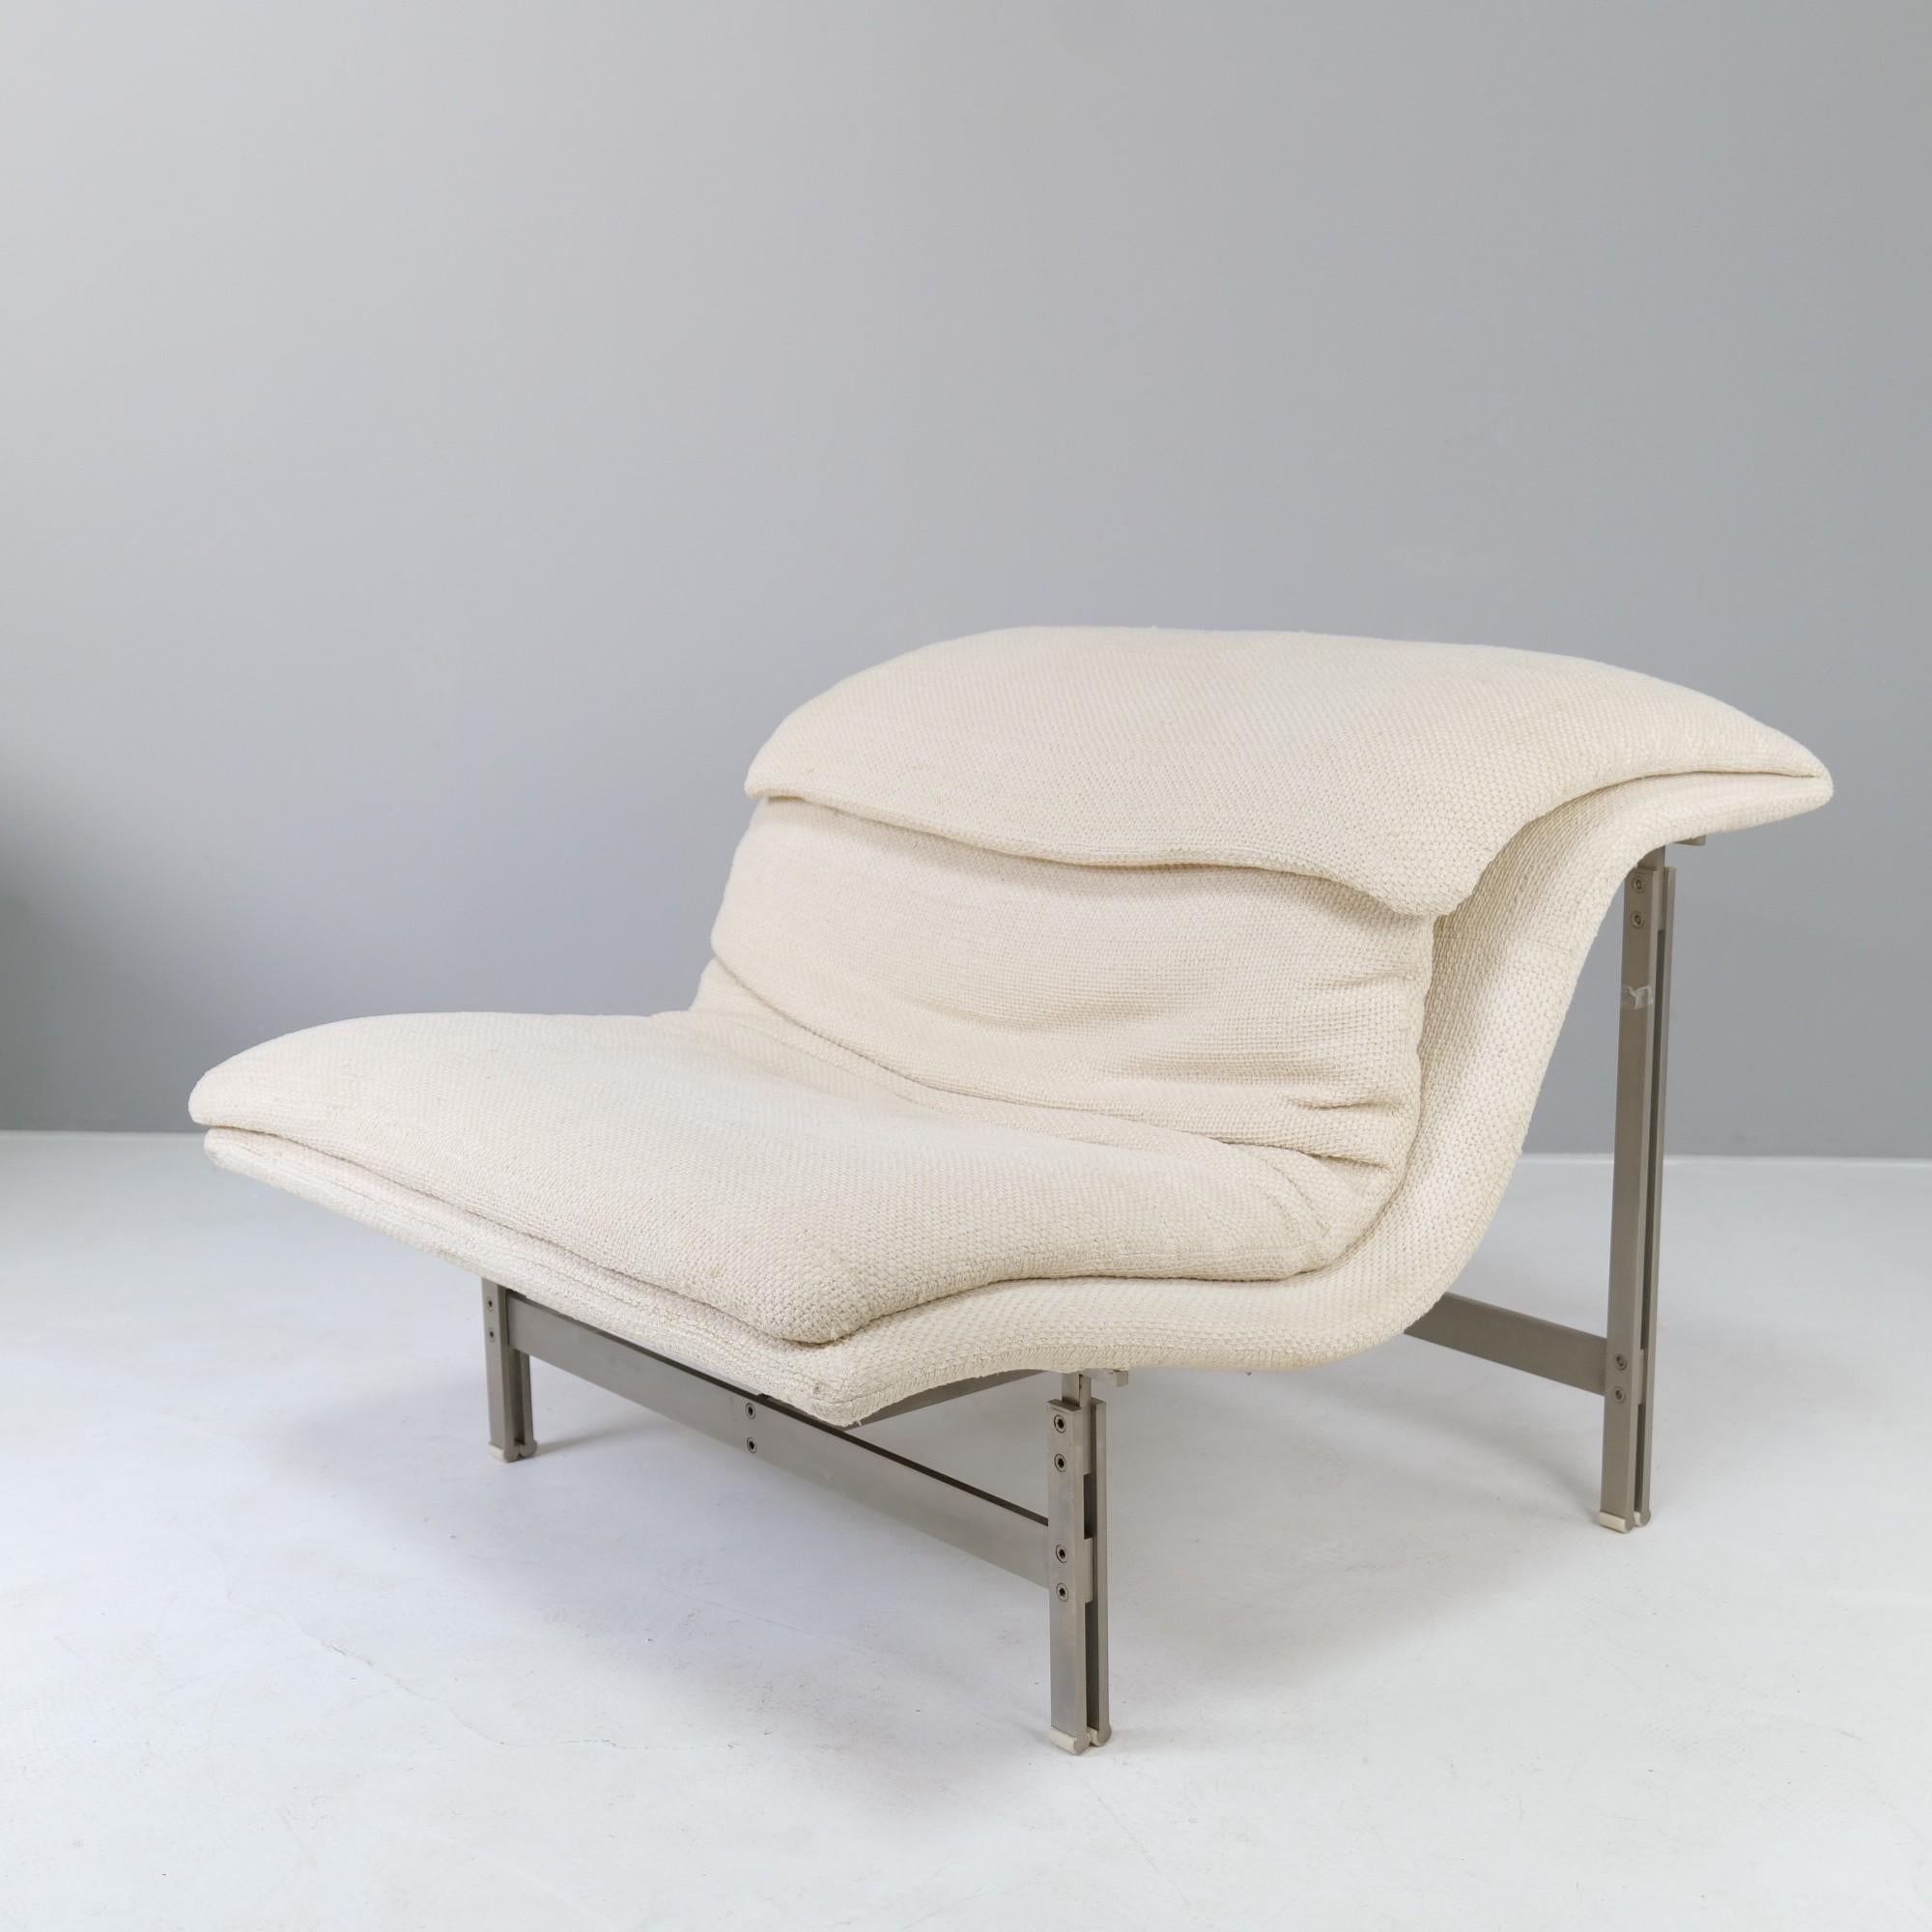 der Loungesessel von Giovanni Offredi hat eine sehr bequeme Sitzfläche 
Der Rahmen ist extrem hochwertig verarbeitet. 
Signiert mit Firmenlogo auf der Unterseite.